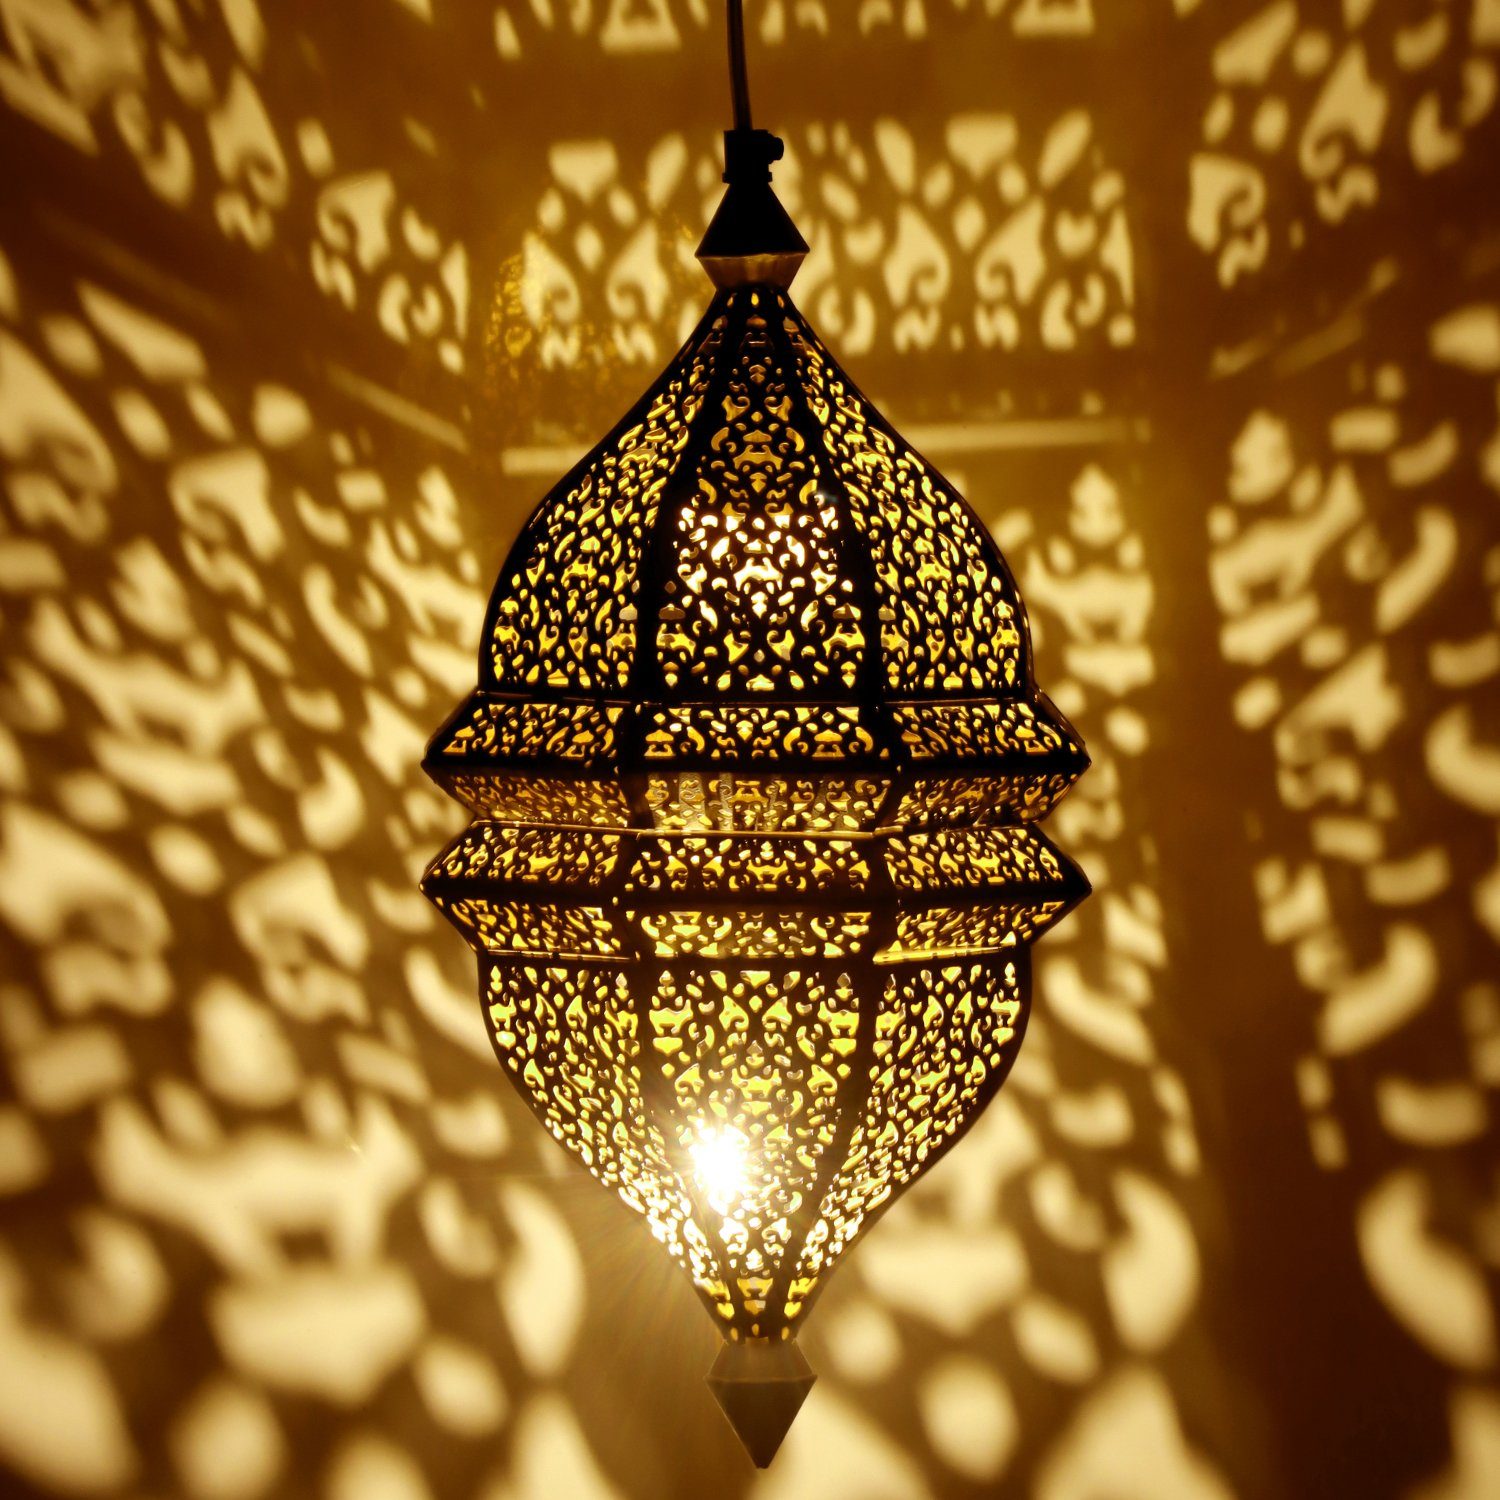 Marrakesch Orient & Mediterran Interior Deckenleuchte Orientalische Lampe  Pendelleuchte Riri 42cm E27 Lampenfassung, Marokkanische Design  Hängeleuchte Leuchte aus Marokko, Orient Lampen für Wohnzimmer Küche oder  Hängend über den Esstisch